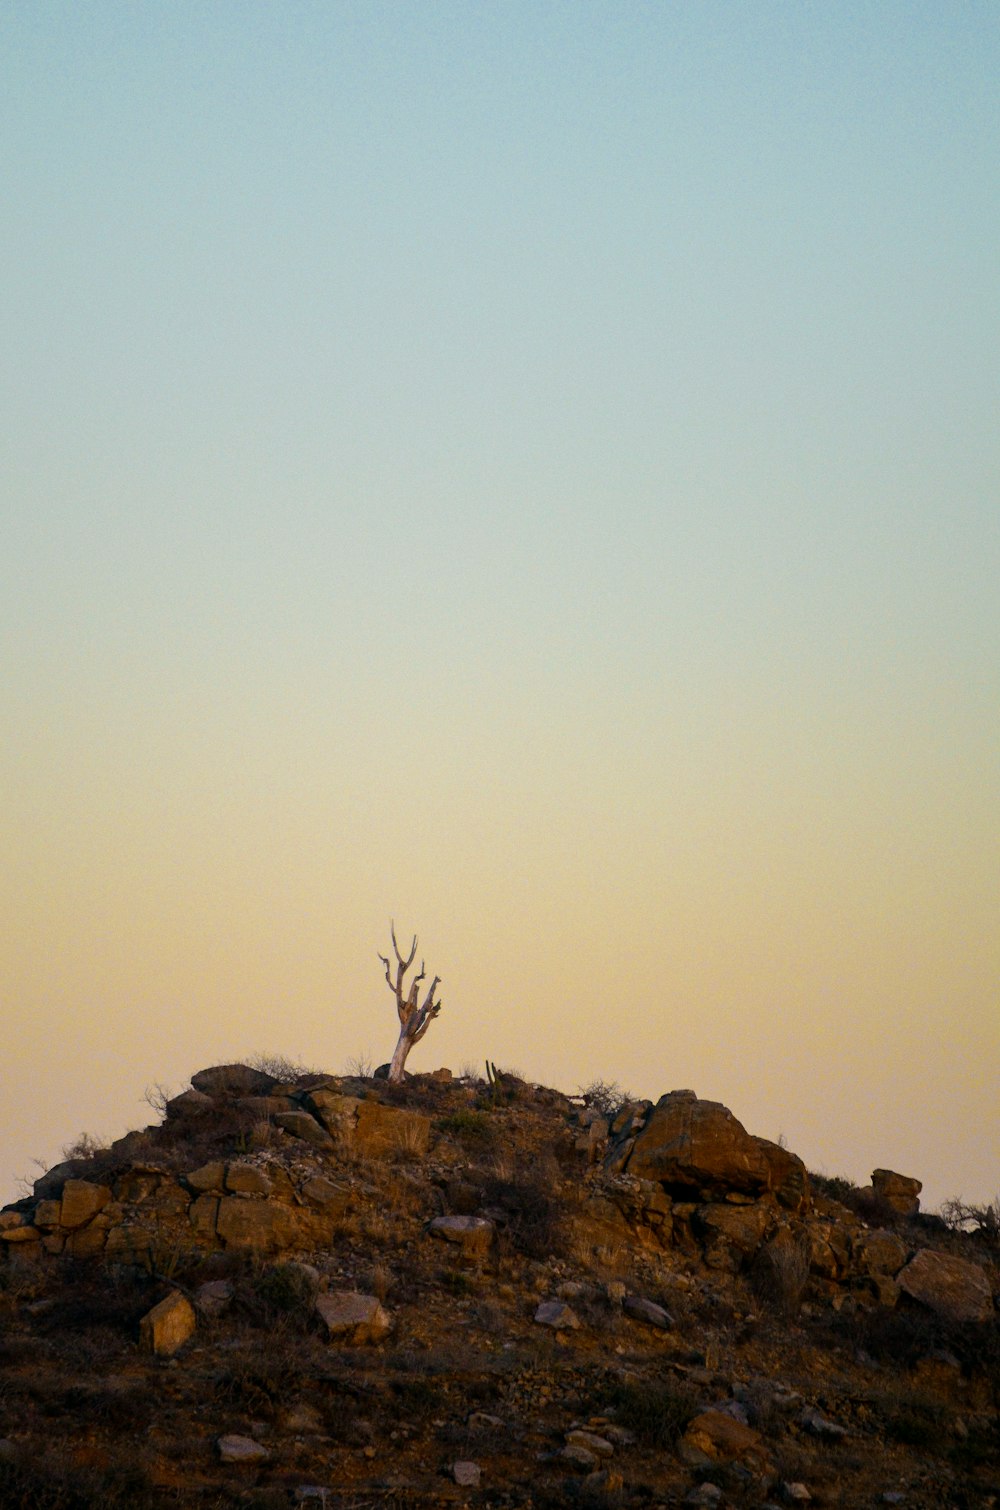 a giraffe standing on top of a rocky hill